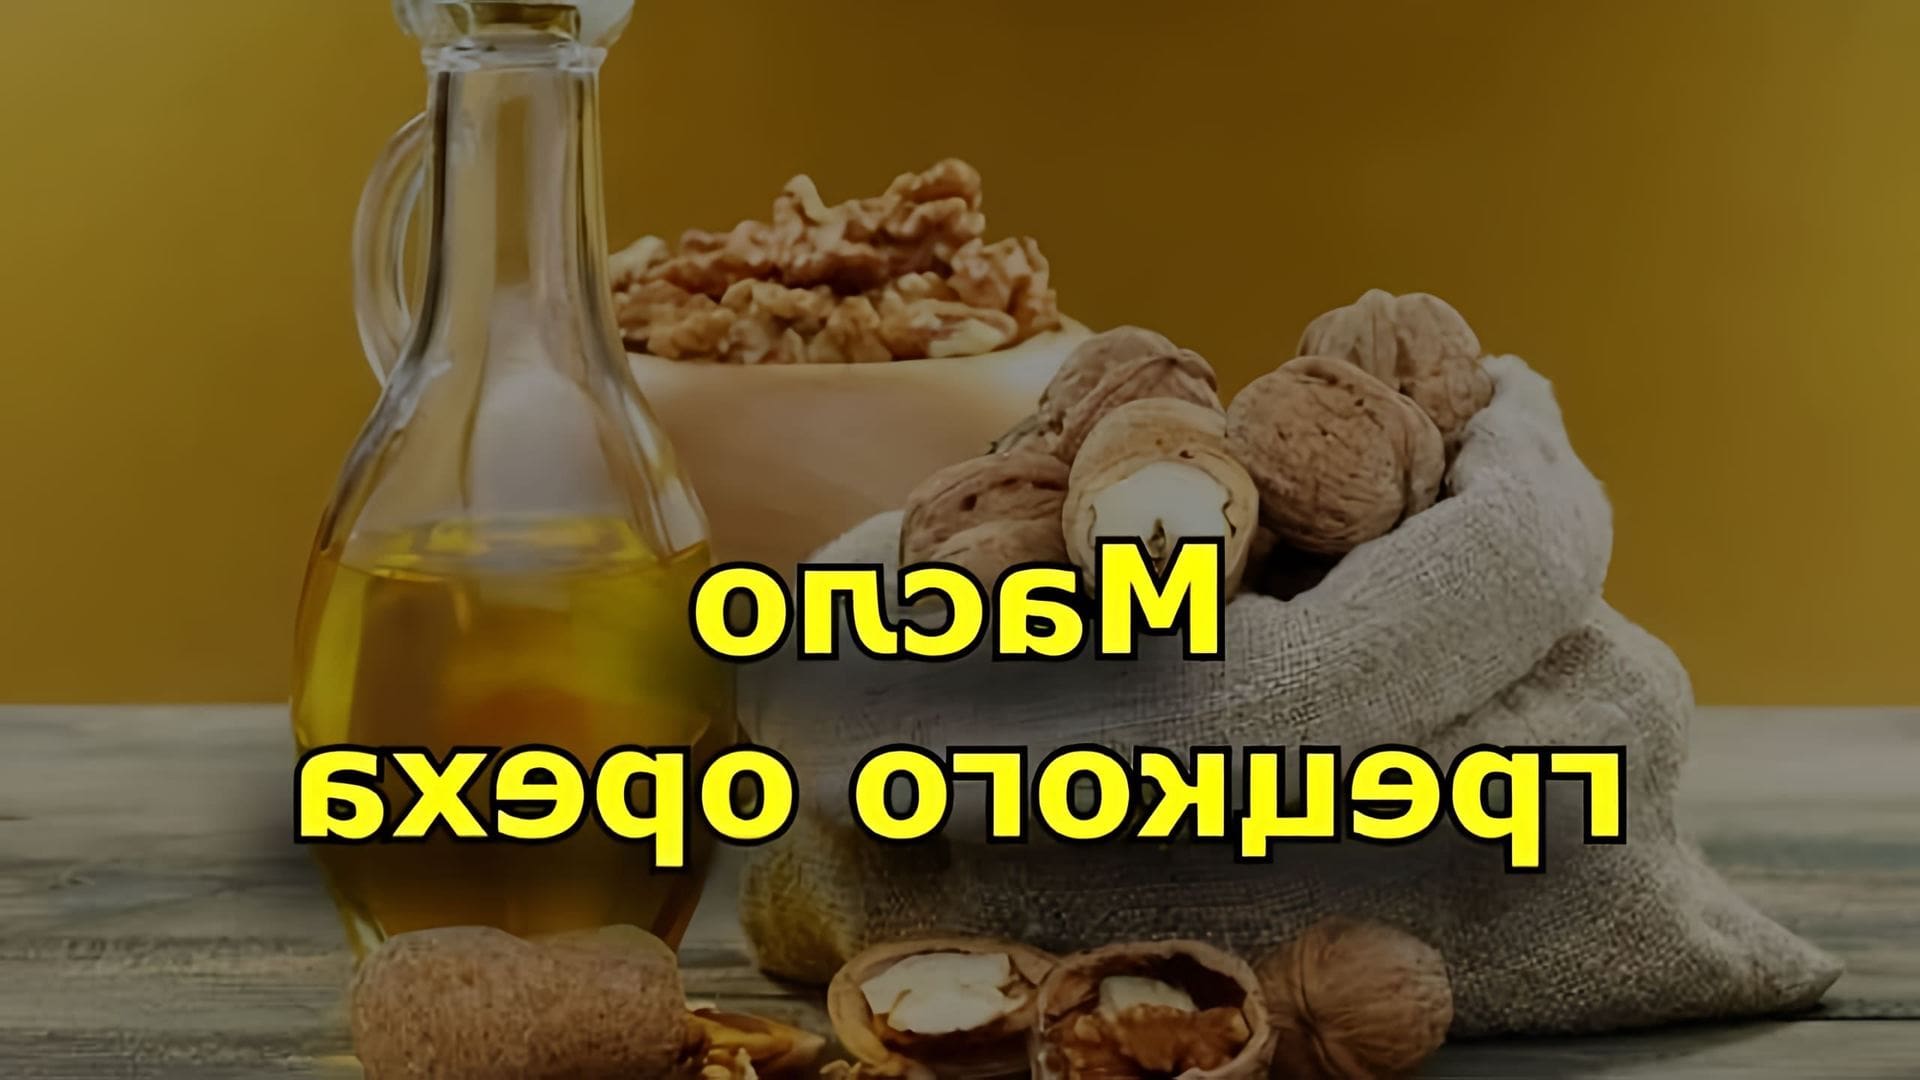 Масло грецкого ореха - это натуральный продукт, получаемый из грецких орехов